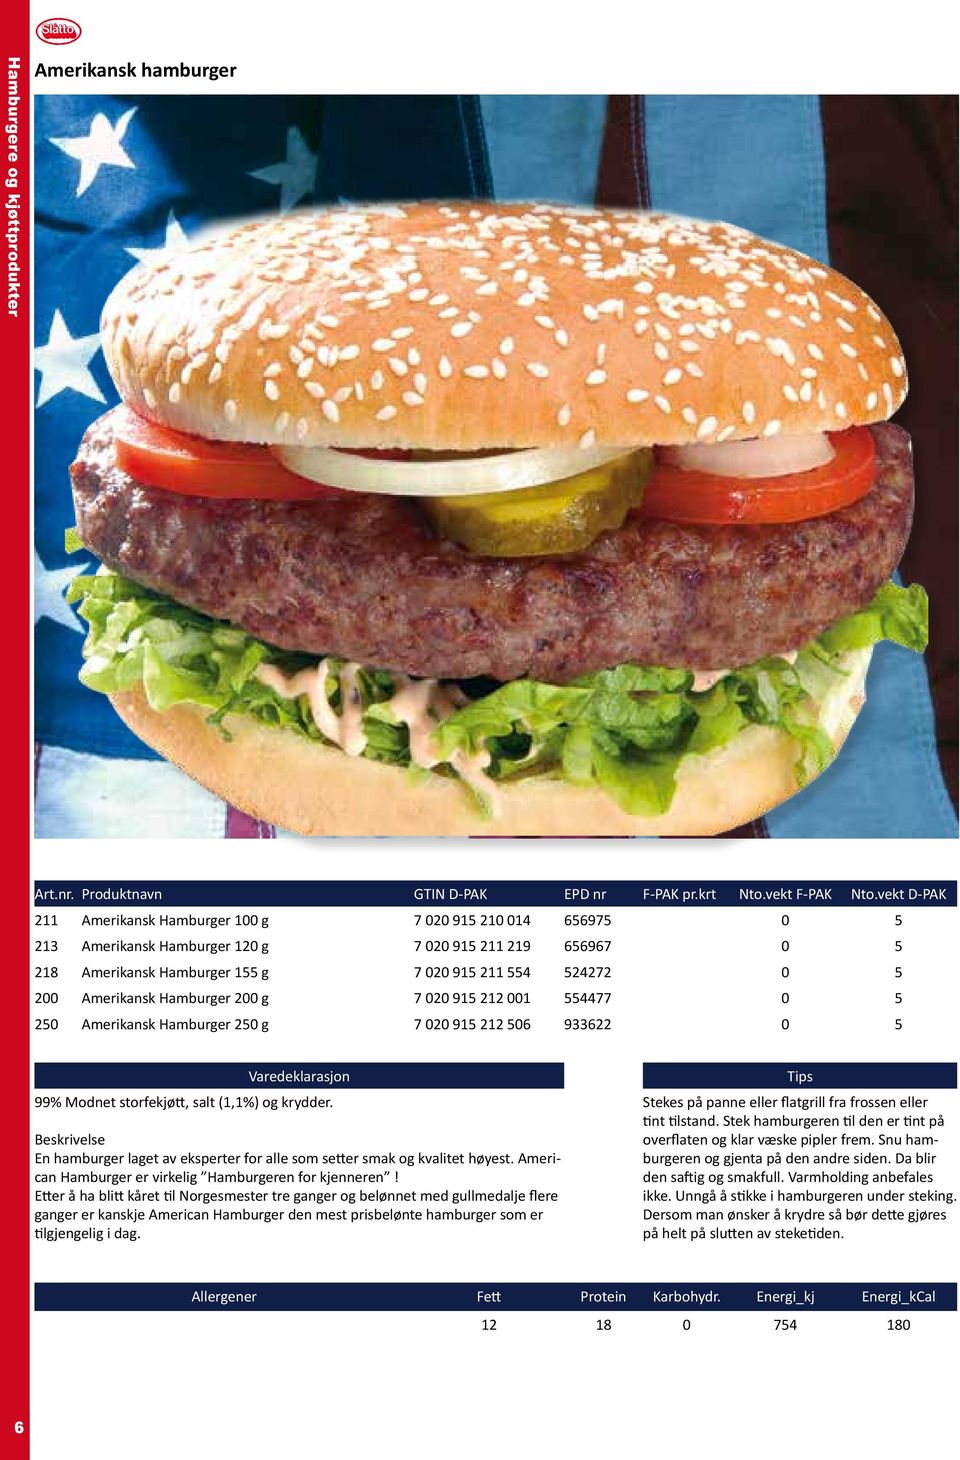 En hamburger laget av eksperter for alle som setter smak og kvalitet høyest. American Hamburger er virkelig Hamburgeren for kjenneren!